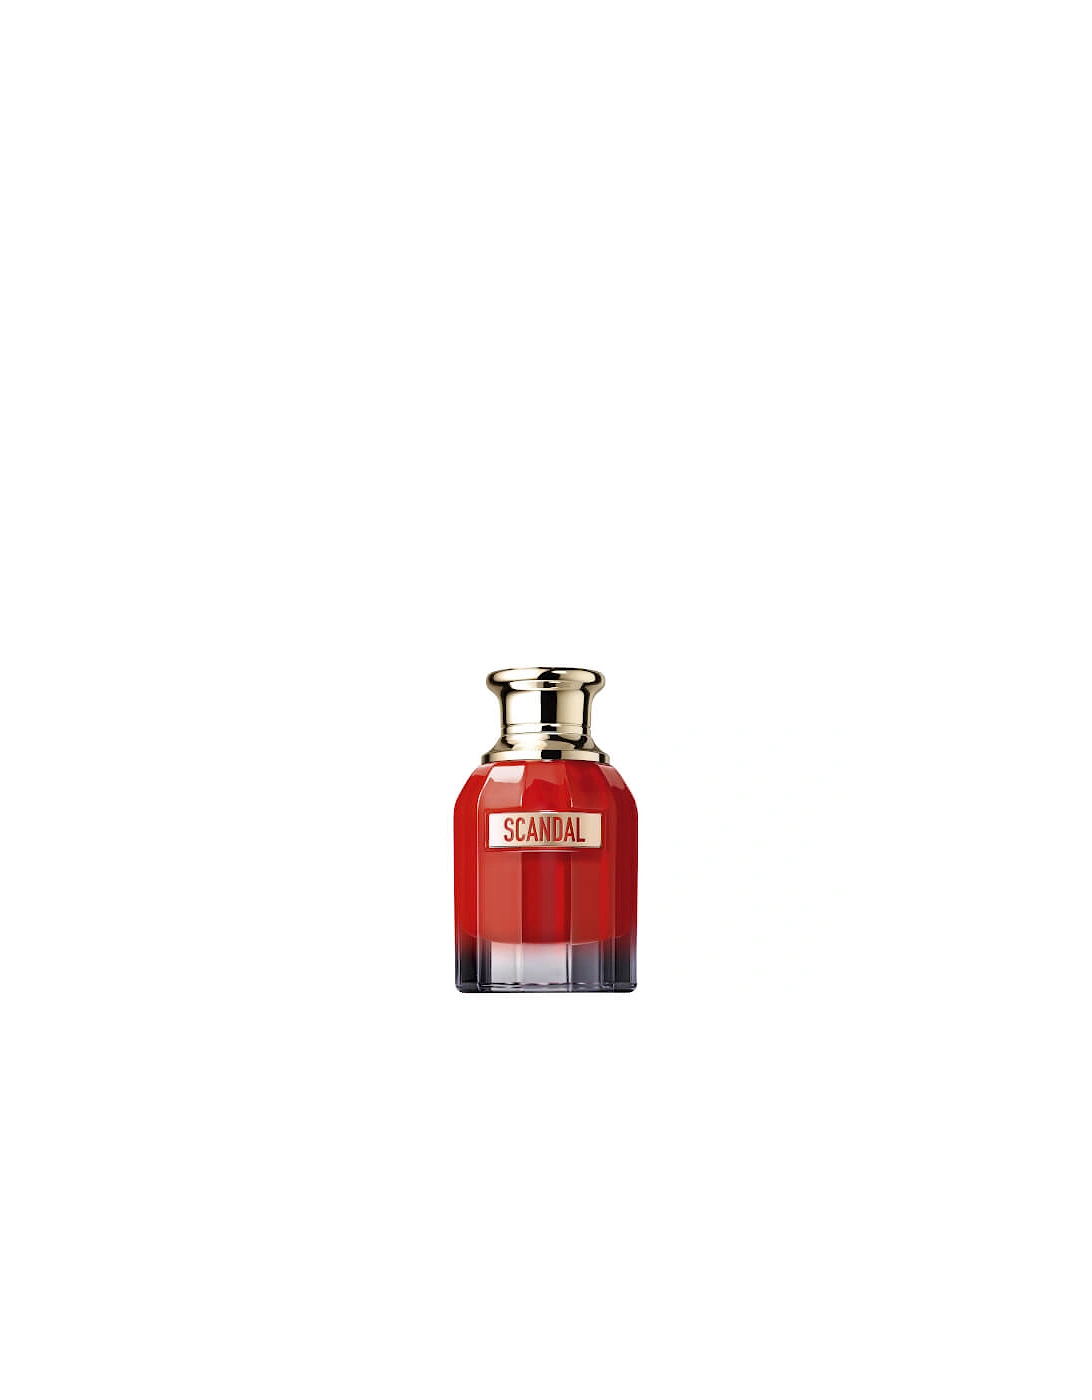 Scandal Le Parfum 30ml, 2 of 1